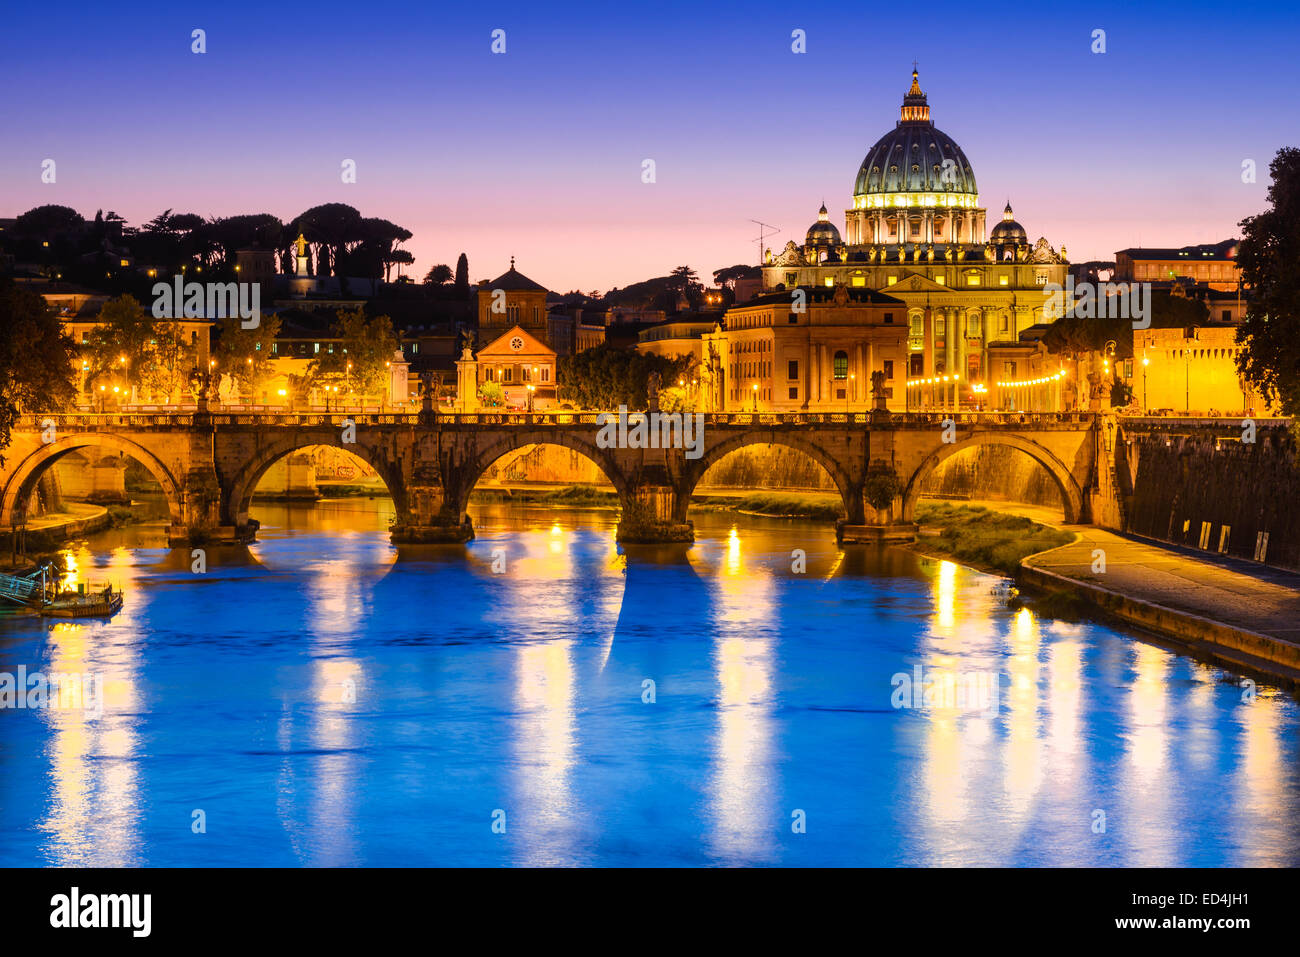 Rome, Italie. Nuit image de Vatican, le Dôme de San Pietro et Sant Angelo, pont au-dessus du Tibre, monument italien Banque D'Images